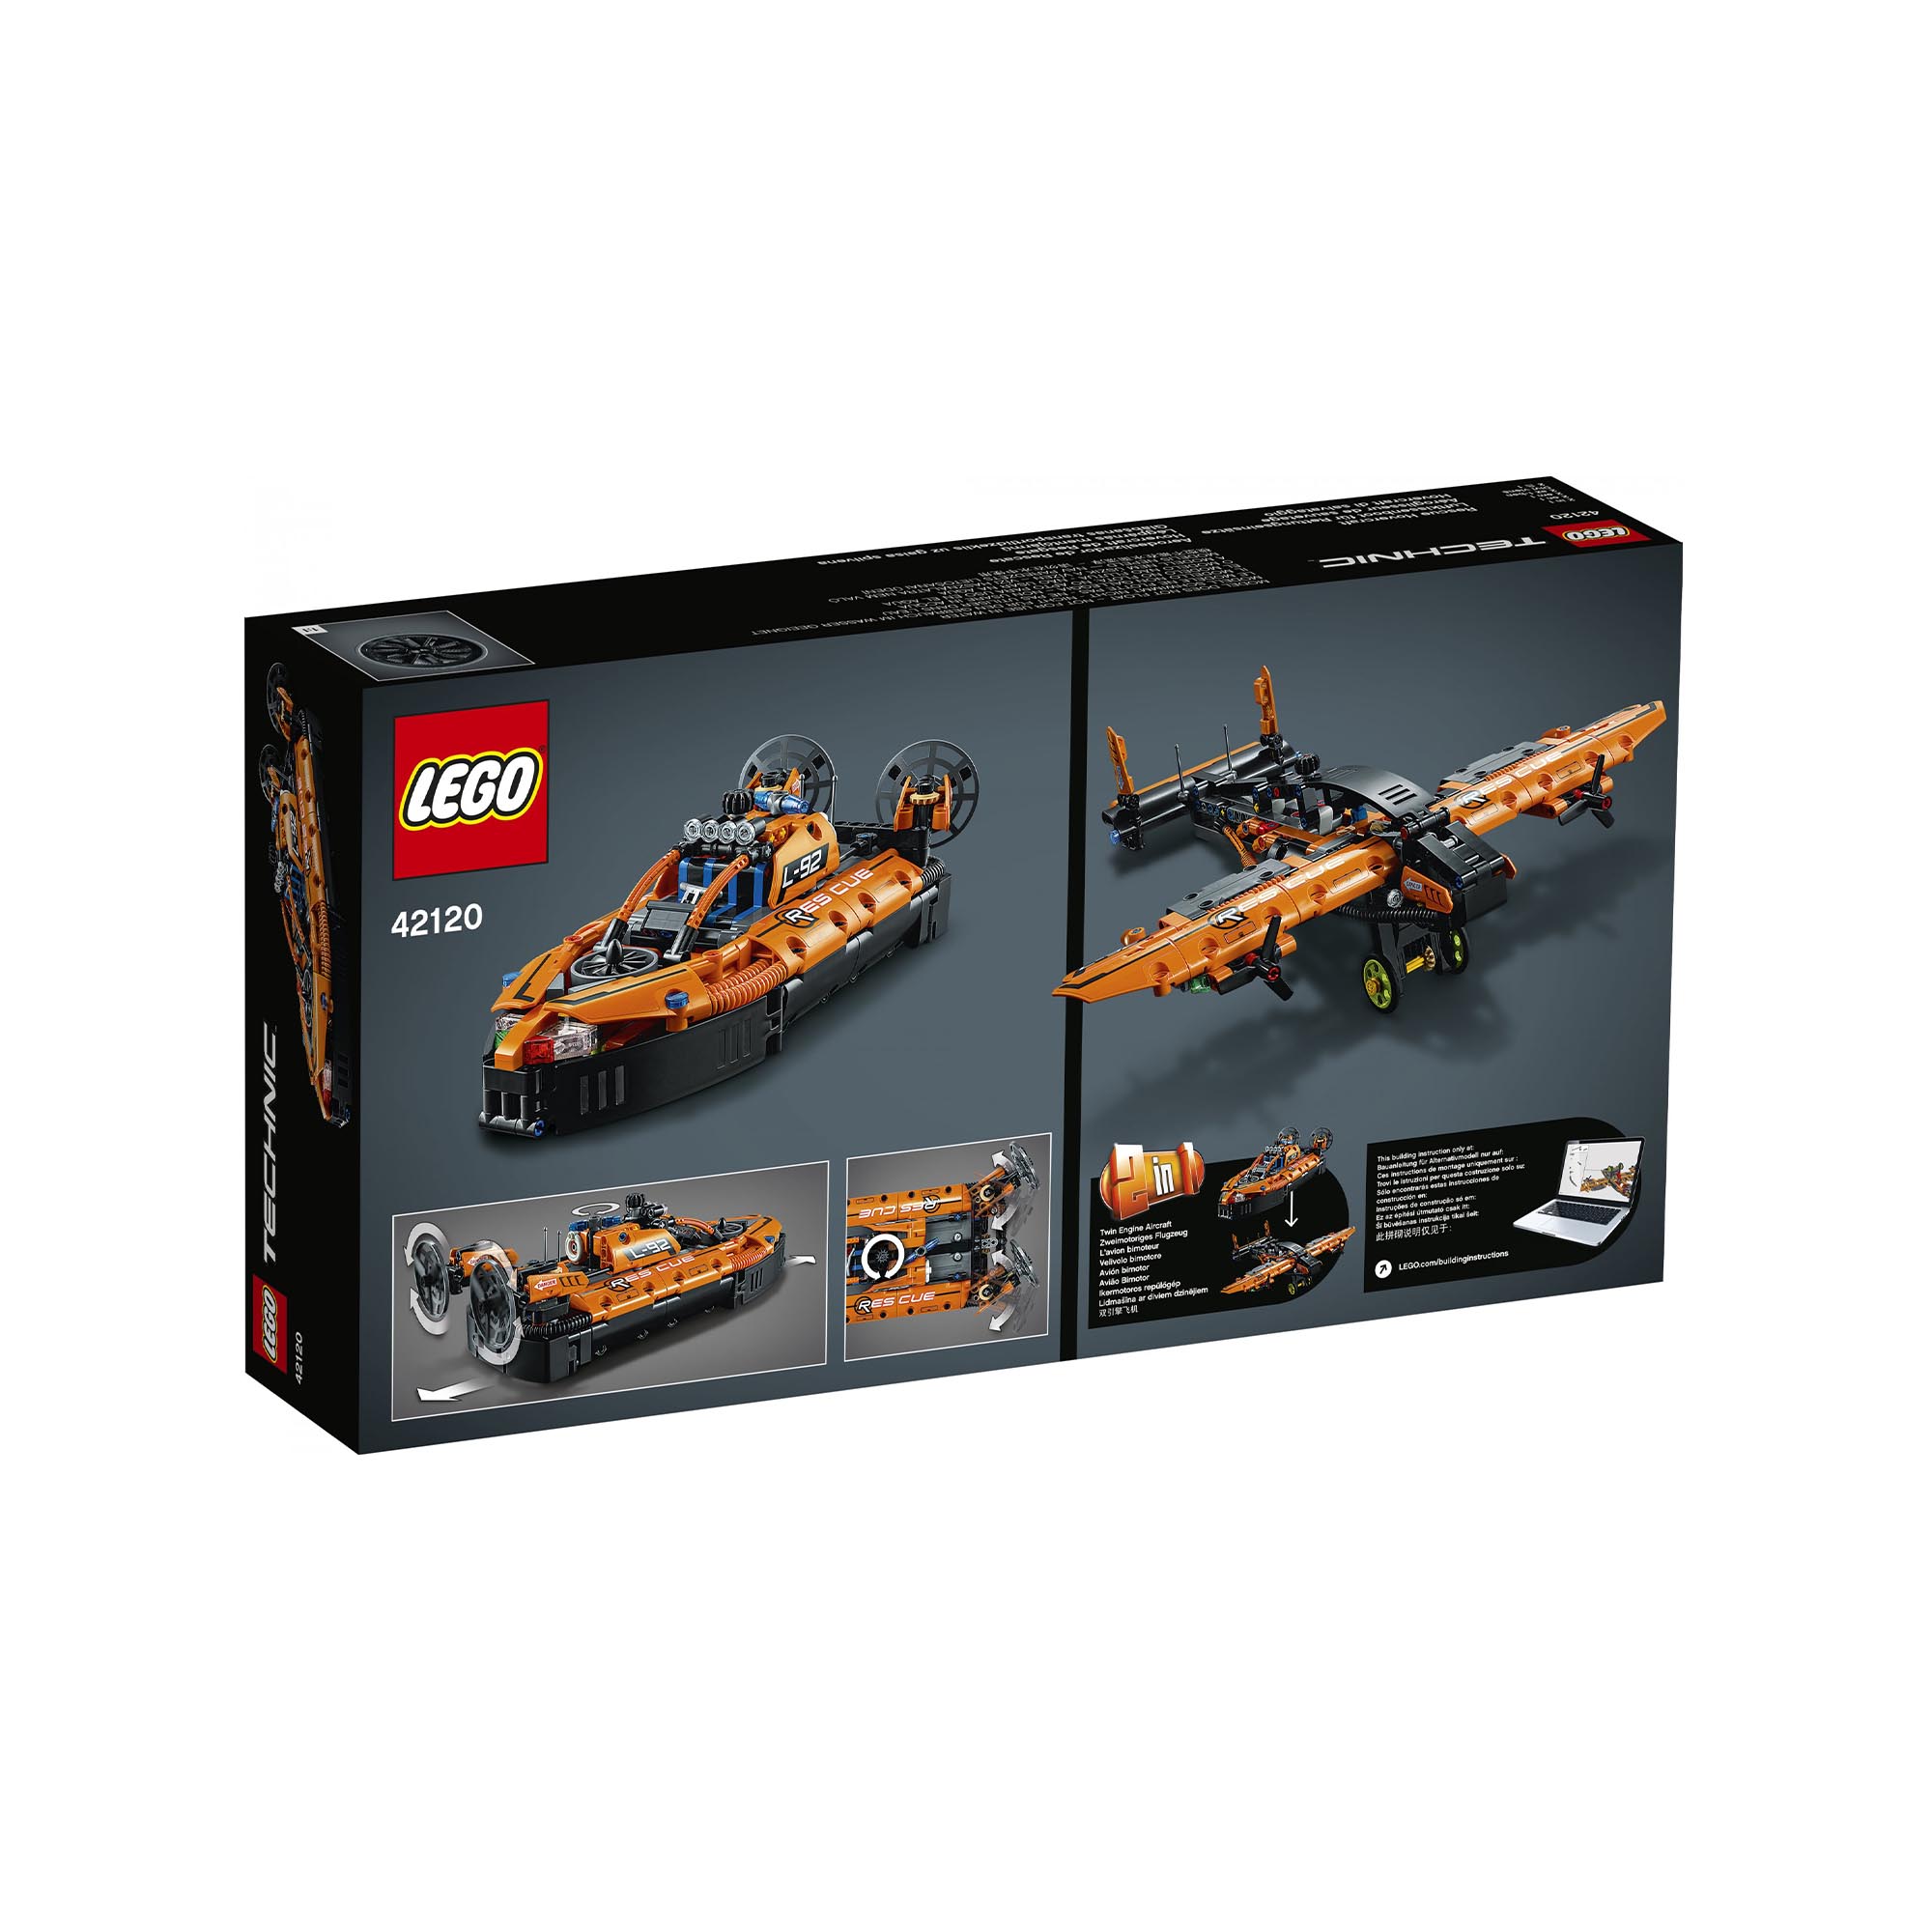 LEGO Technic Hovercraft di Salvataggio, Aereo, Kit di Costruzione 2 in 1, Veicol 42120, , large